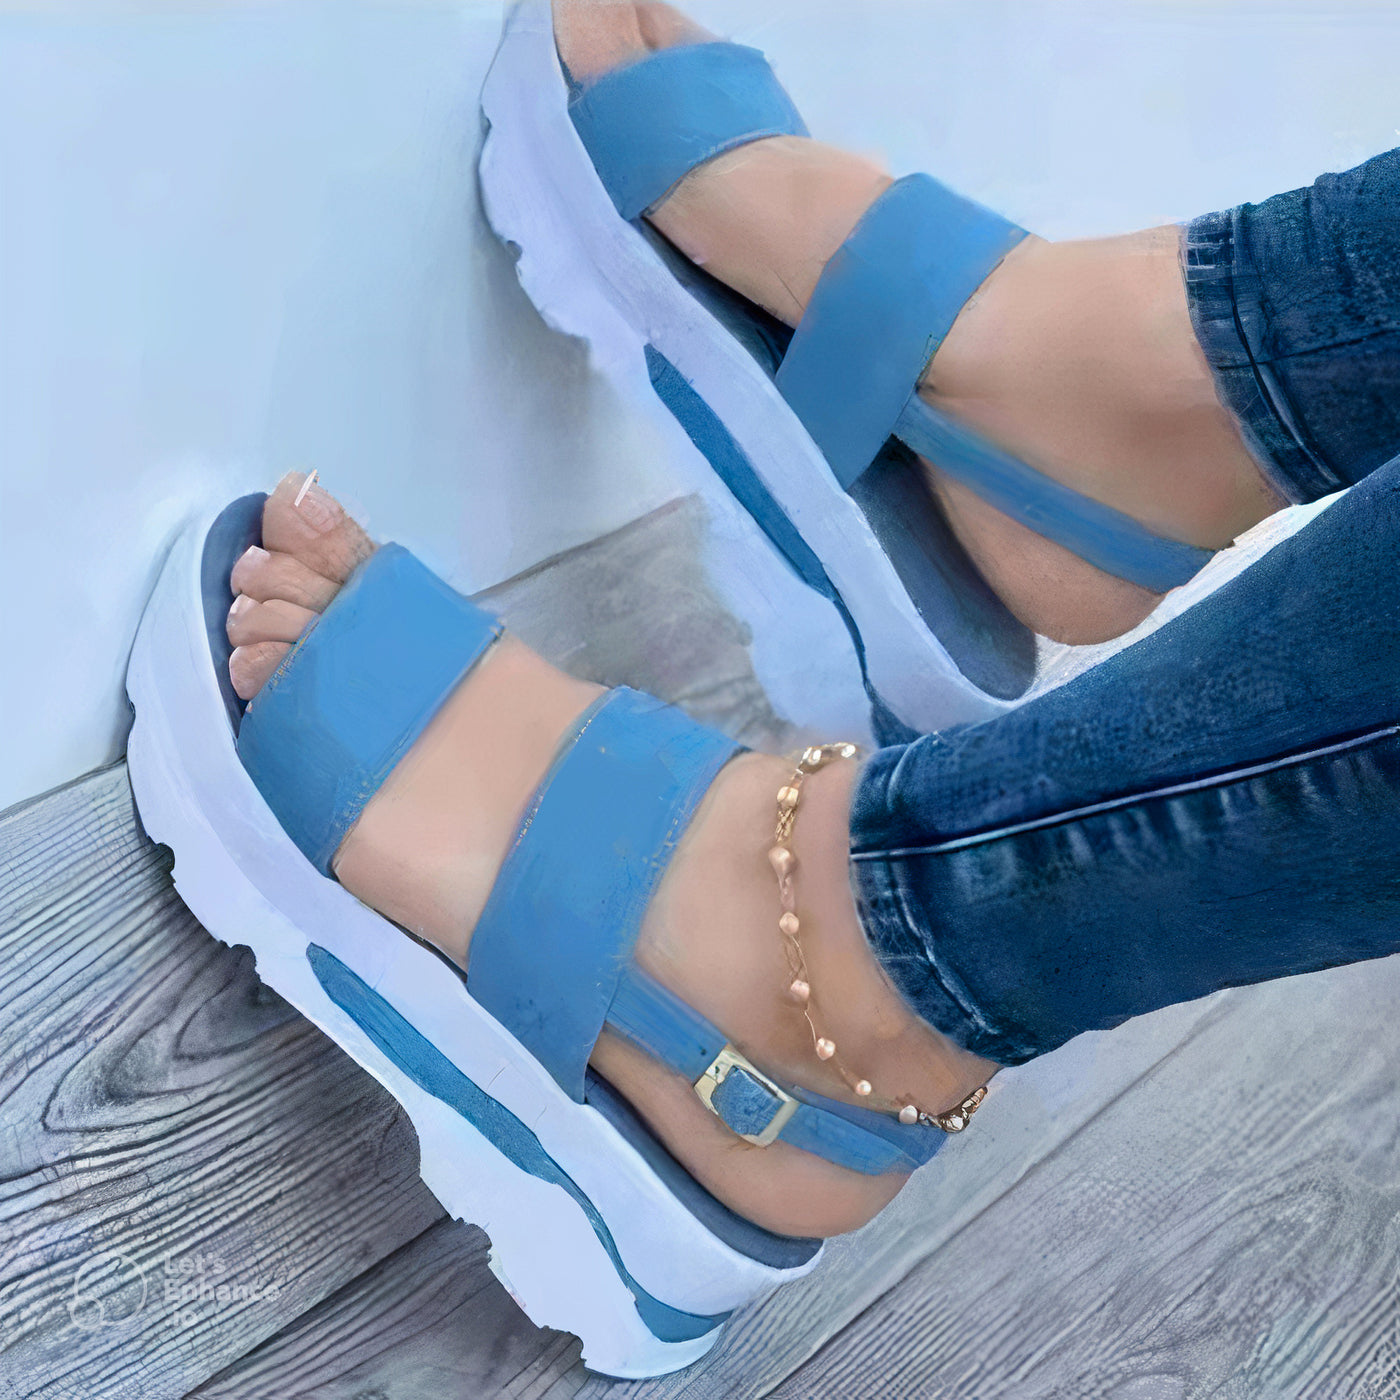 Sarah - Comfy Sandals